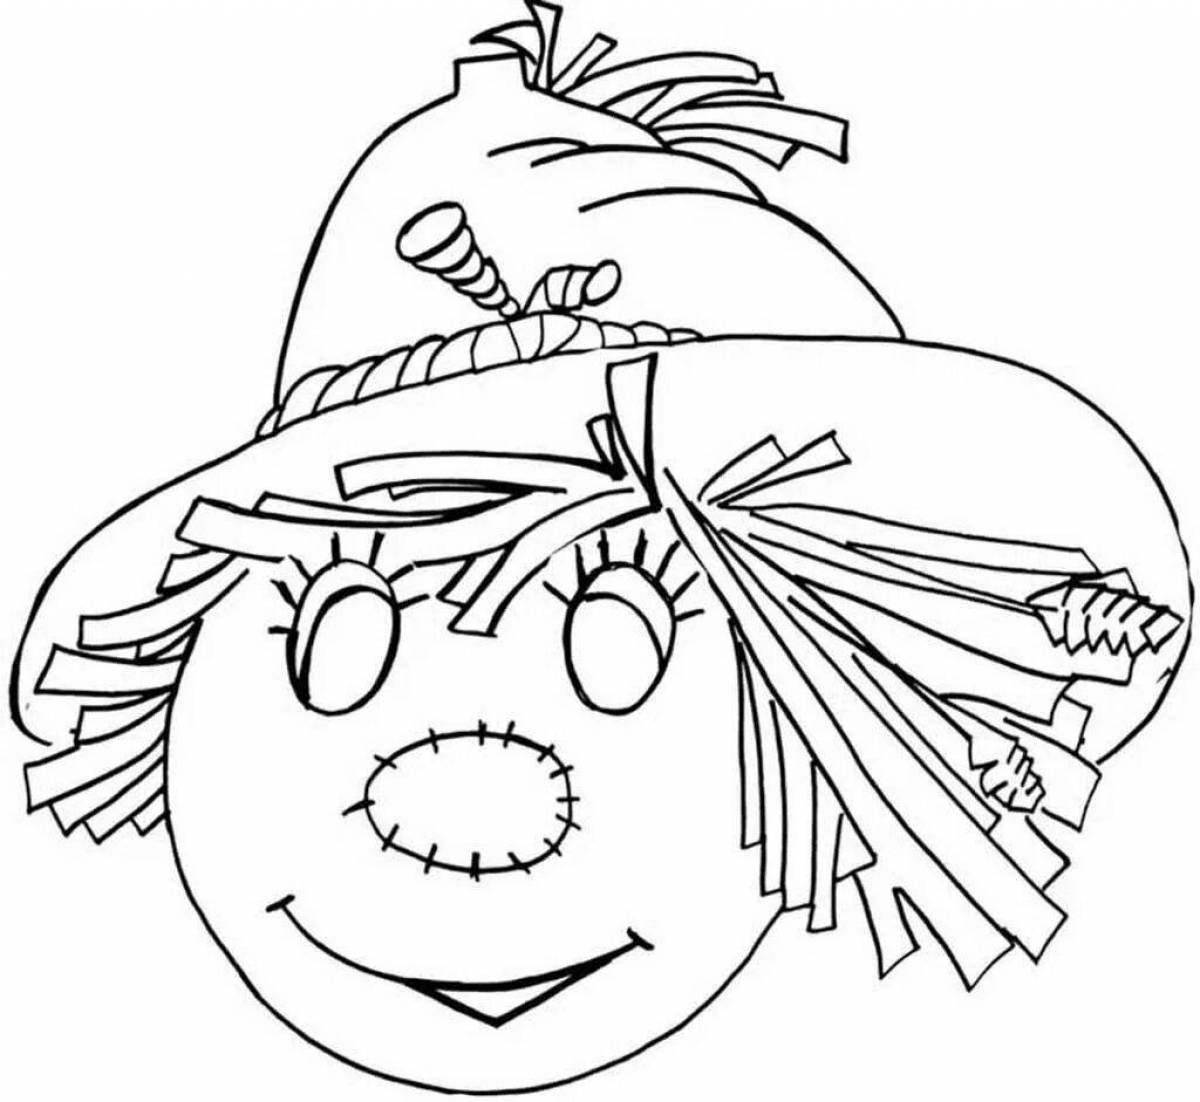 Adorable scarecrow coloring book